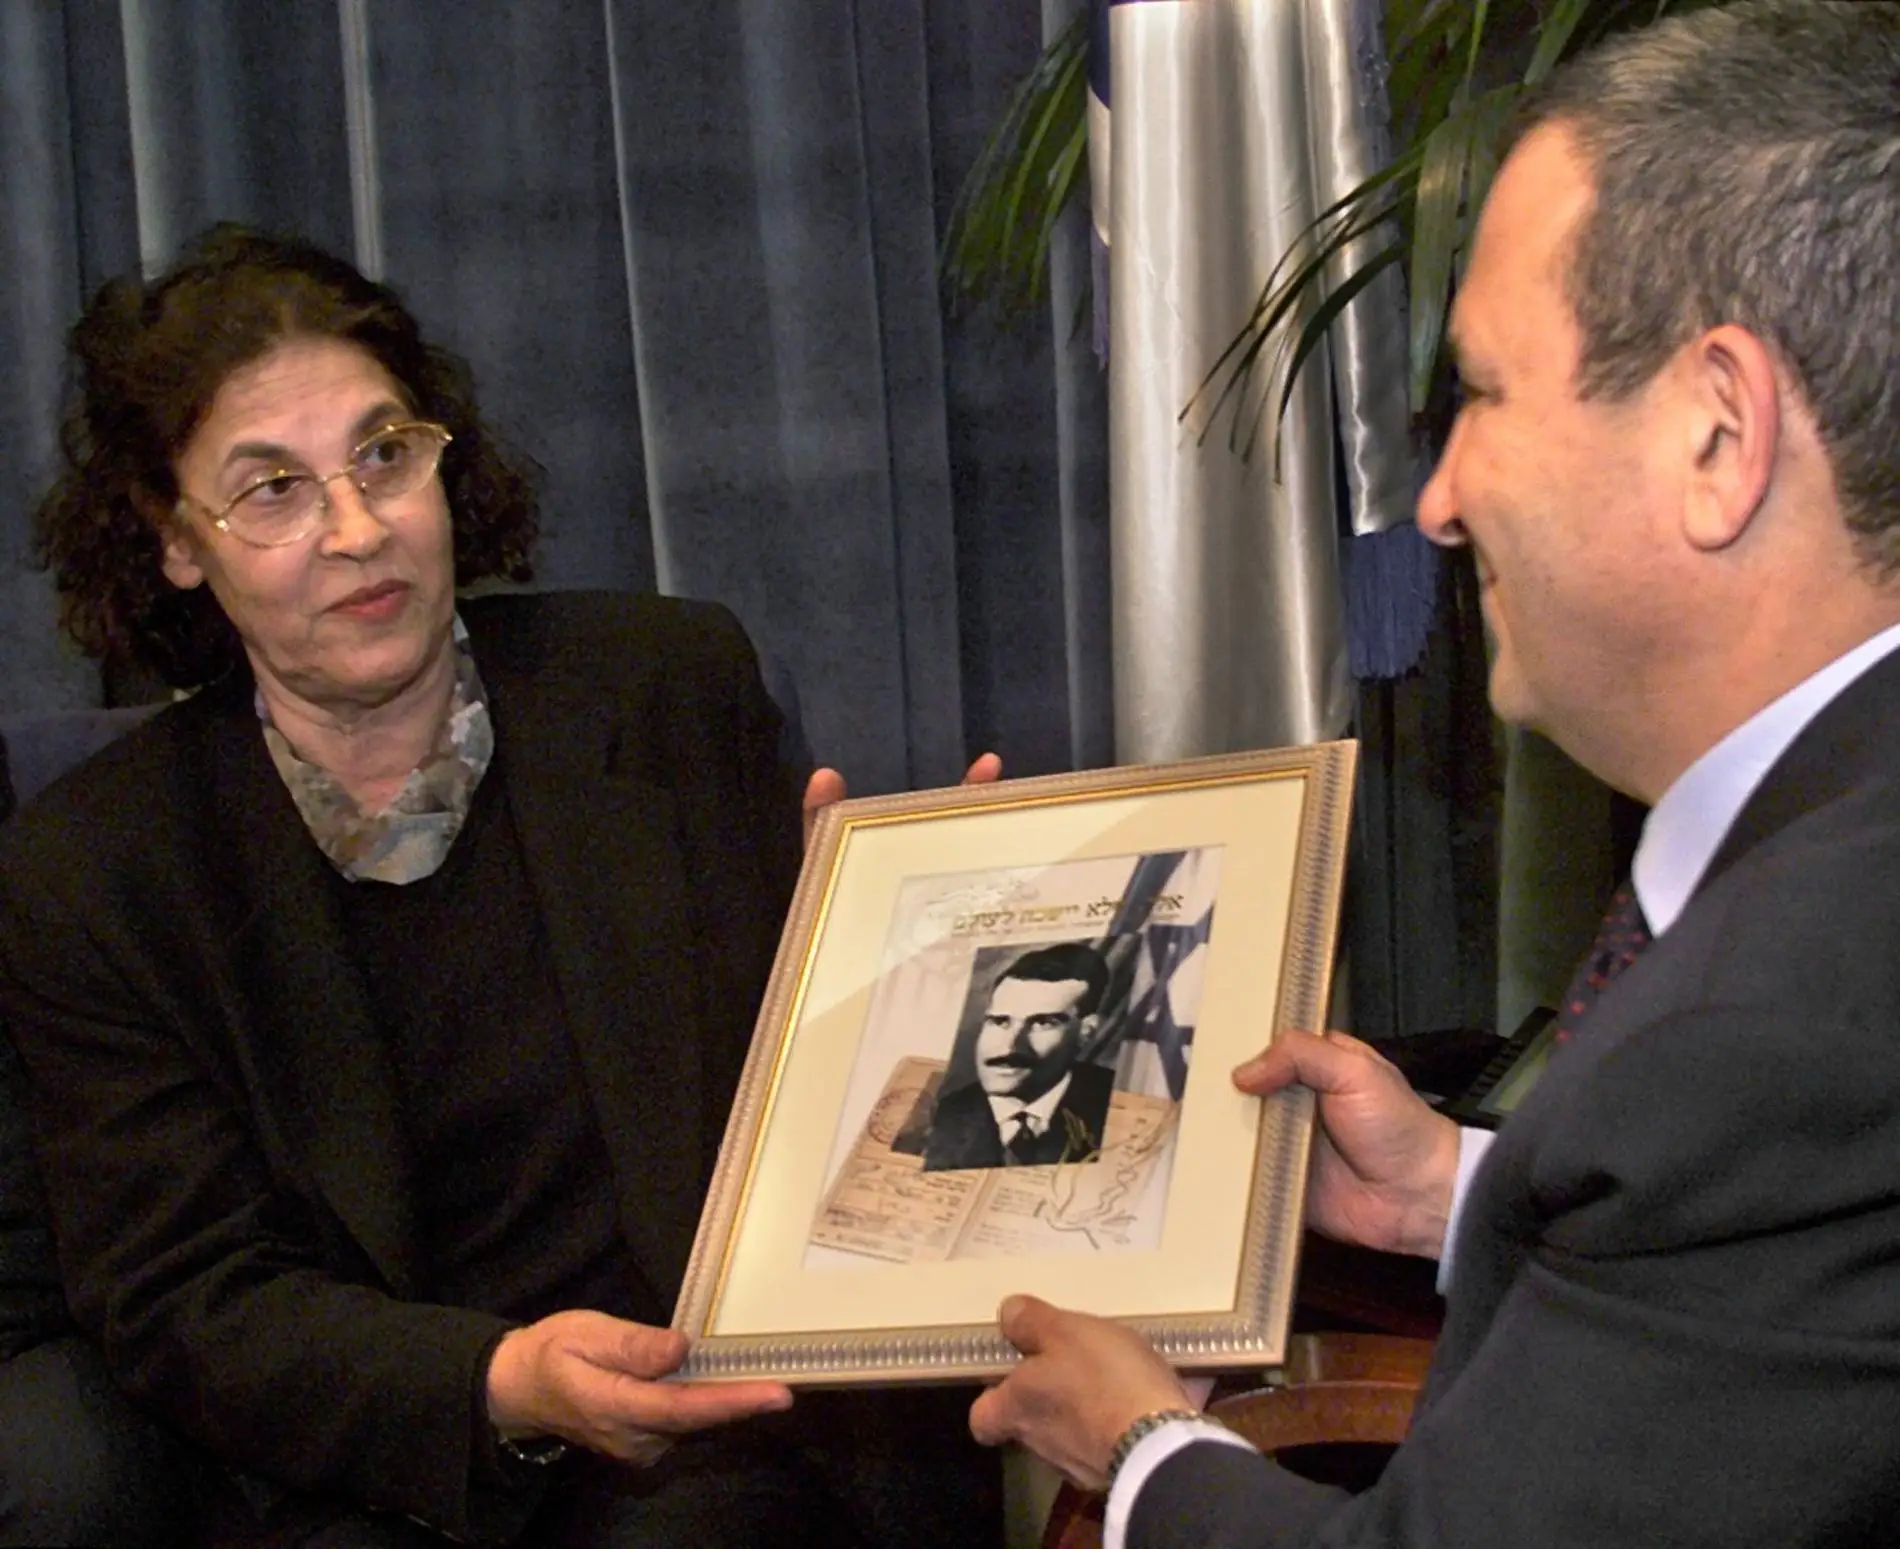 StandWithUs Brasil - Lembrando Eli Cohen, o herói espião israelense que  sacrificou sua vida por seu povo e seu país. Eli cohen foi enforcado em  Damasco no dia 18 de maio de